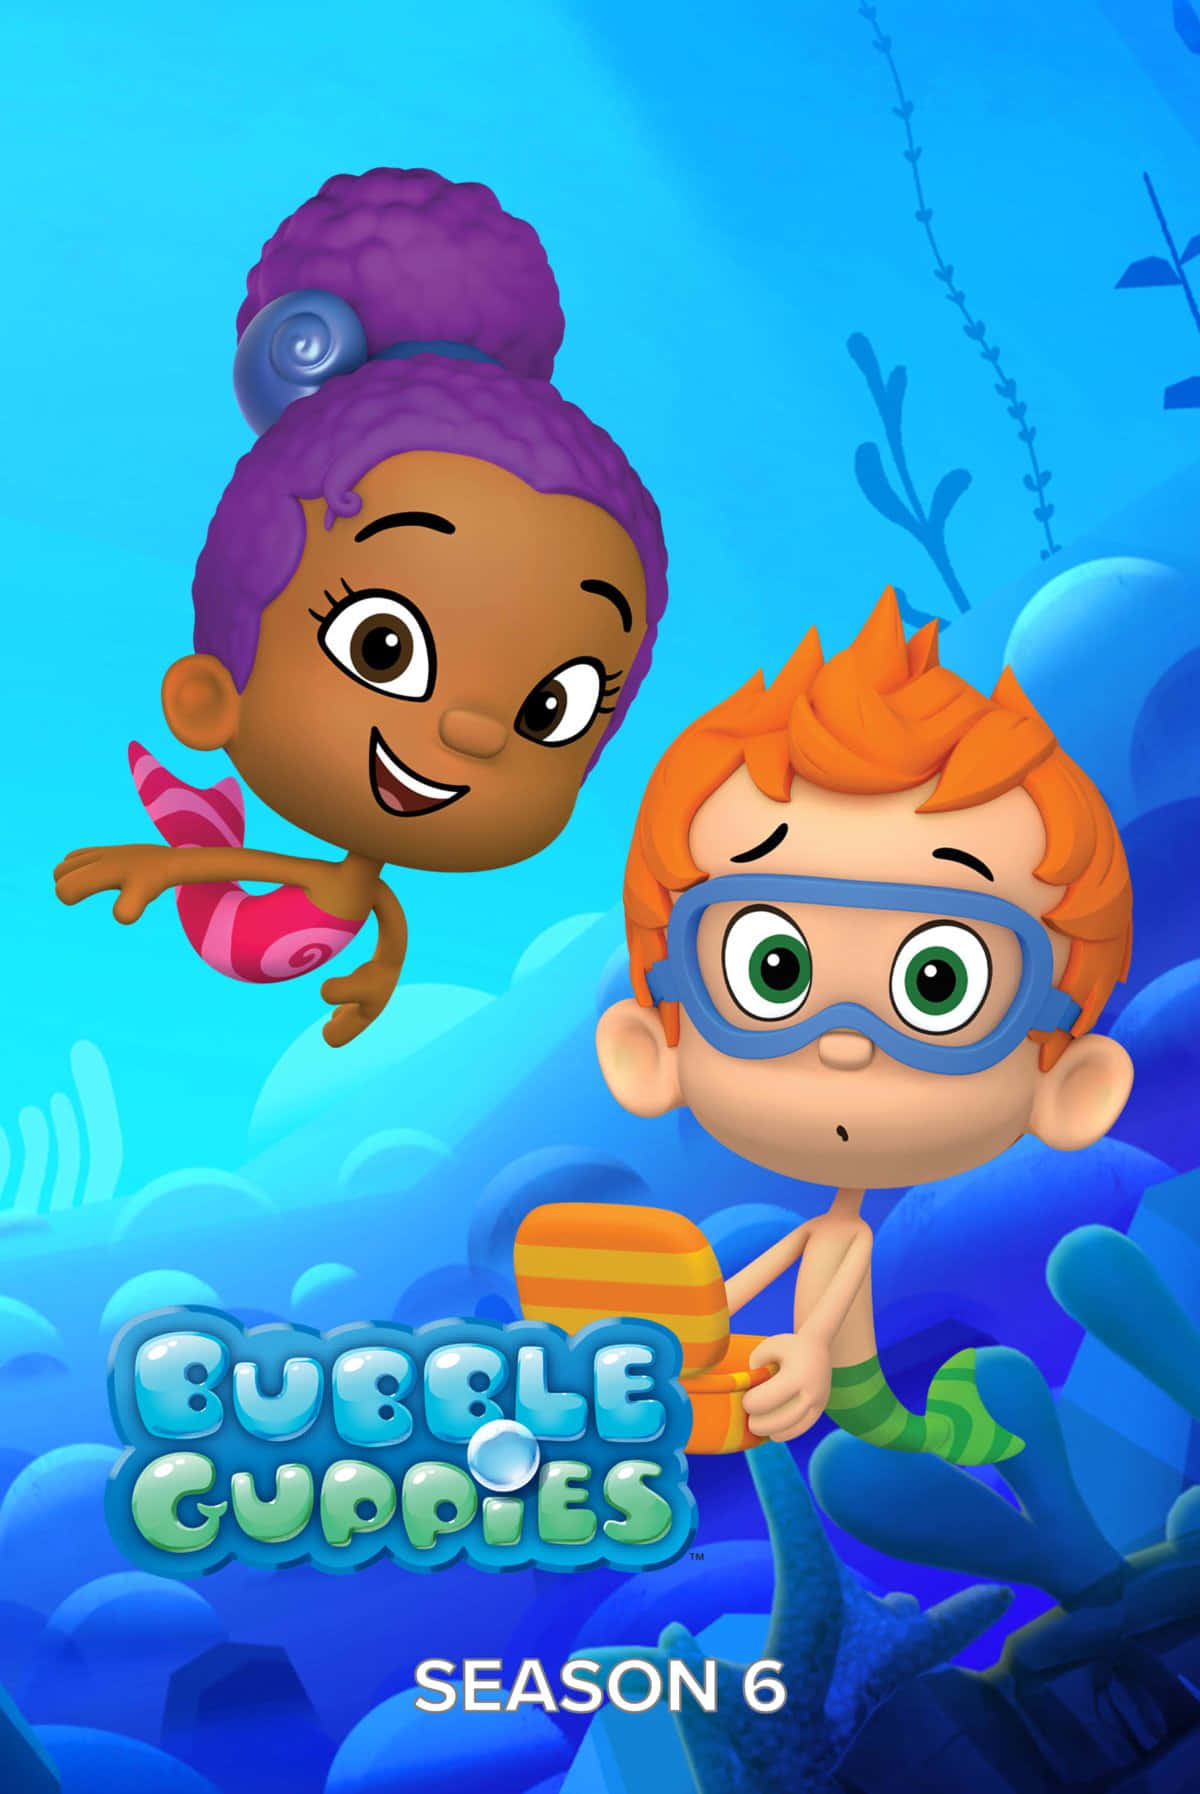 Komoch Utforska En Magisk Undervattensvärld Med Molly, Gil Och Alla Deras Bubble Guppy-vänner!